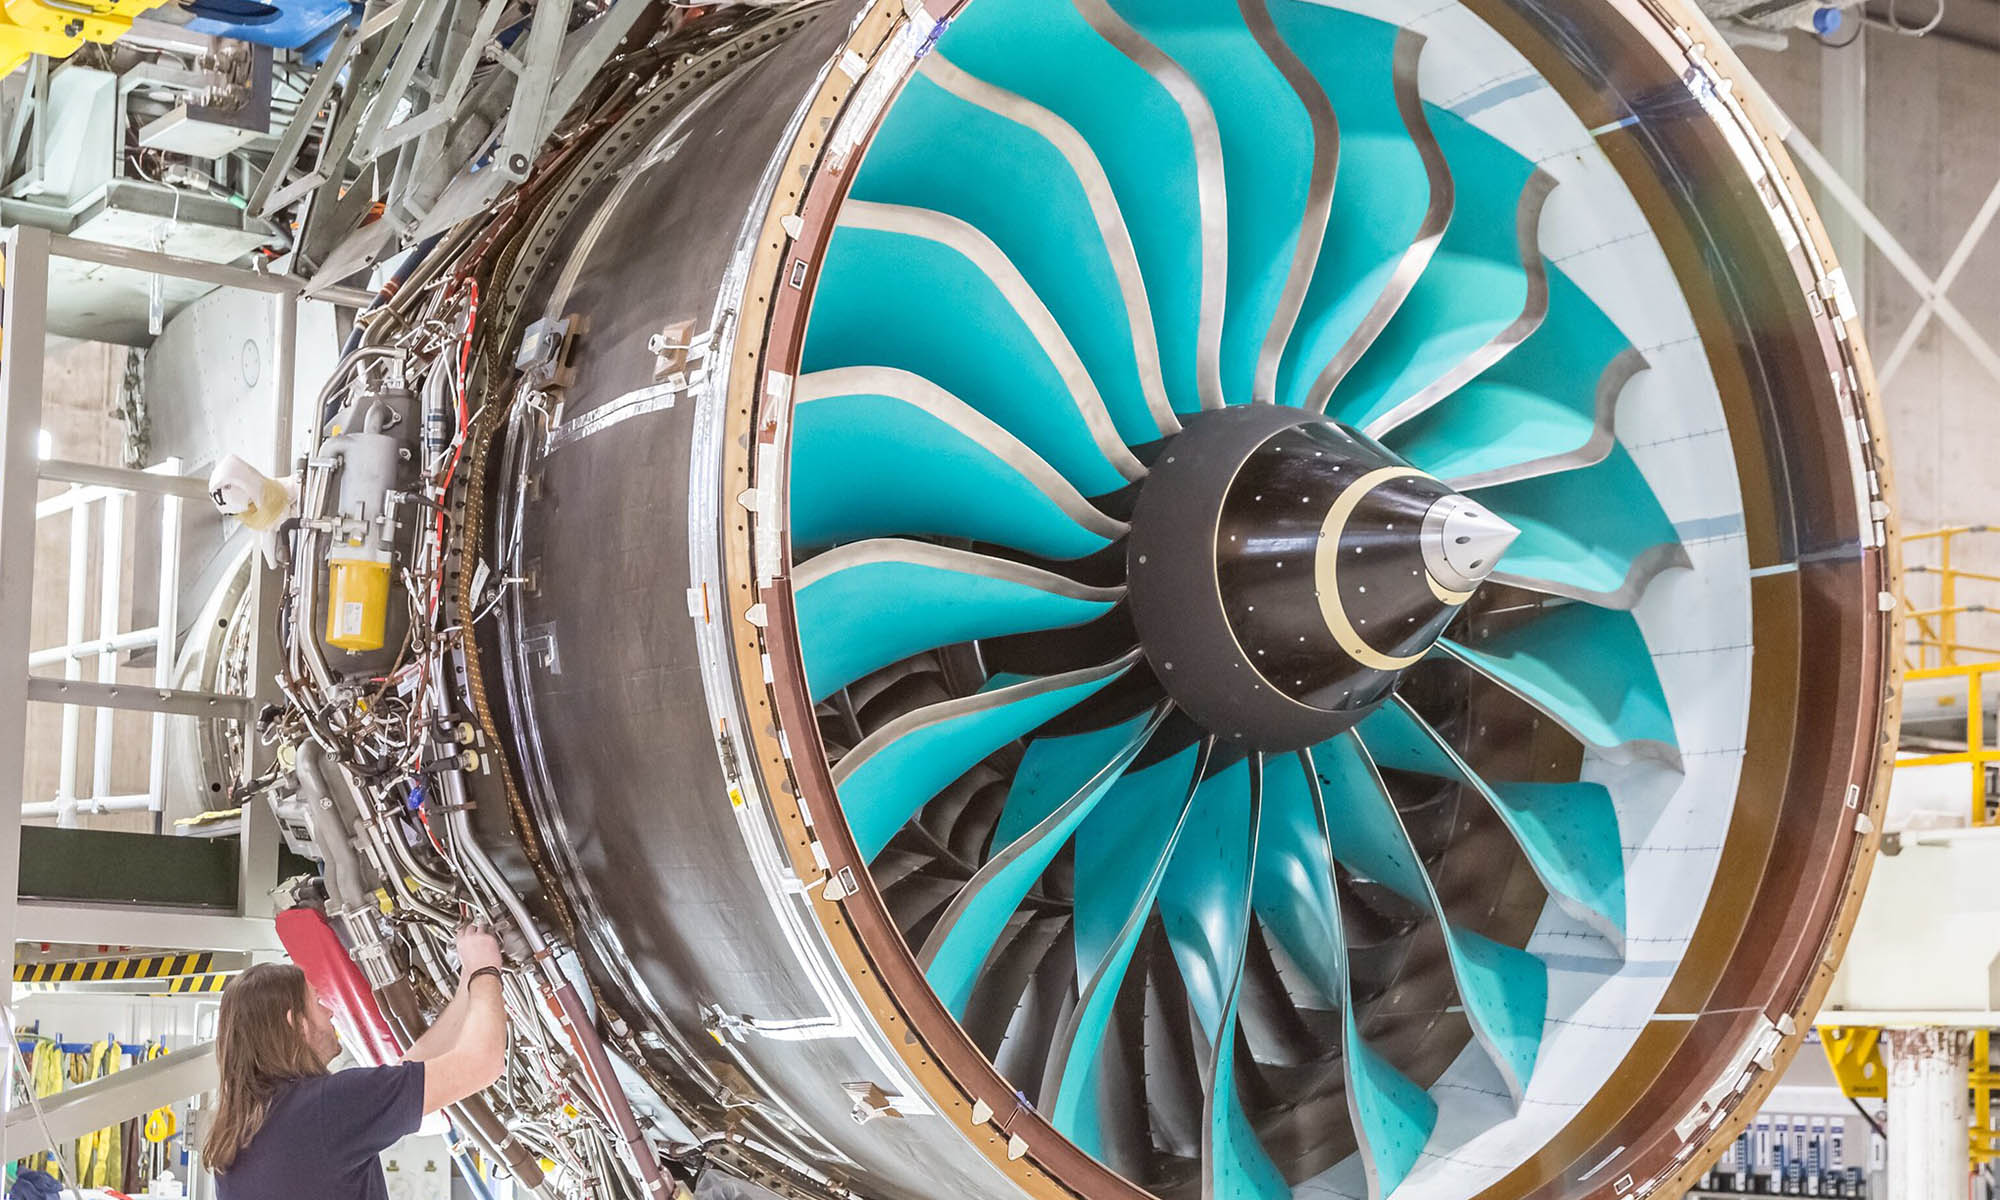 El nuevo motor a reacción de Rolls Royce es compatible con combustible de aviación sostenible.